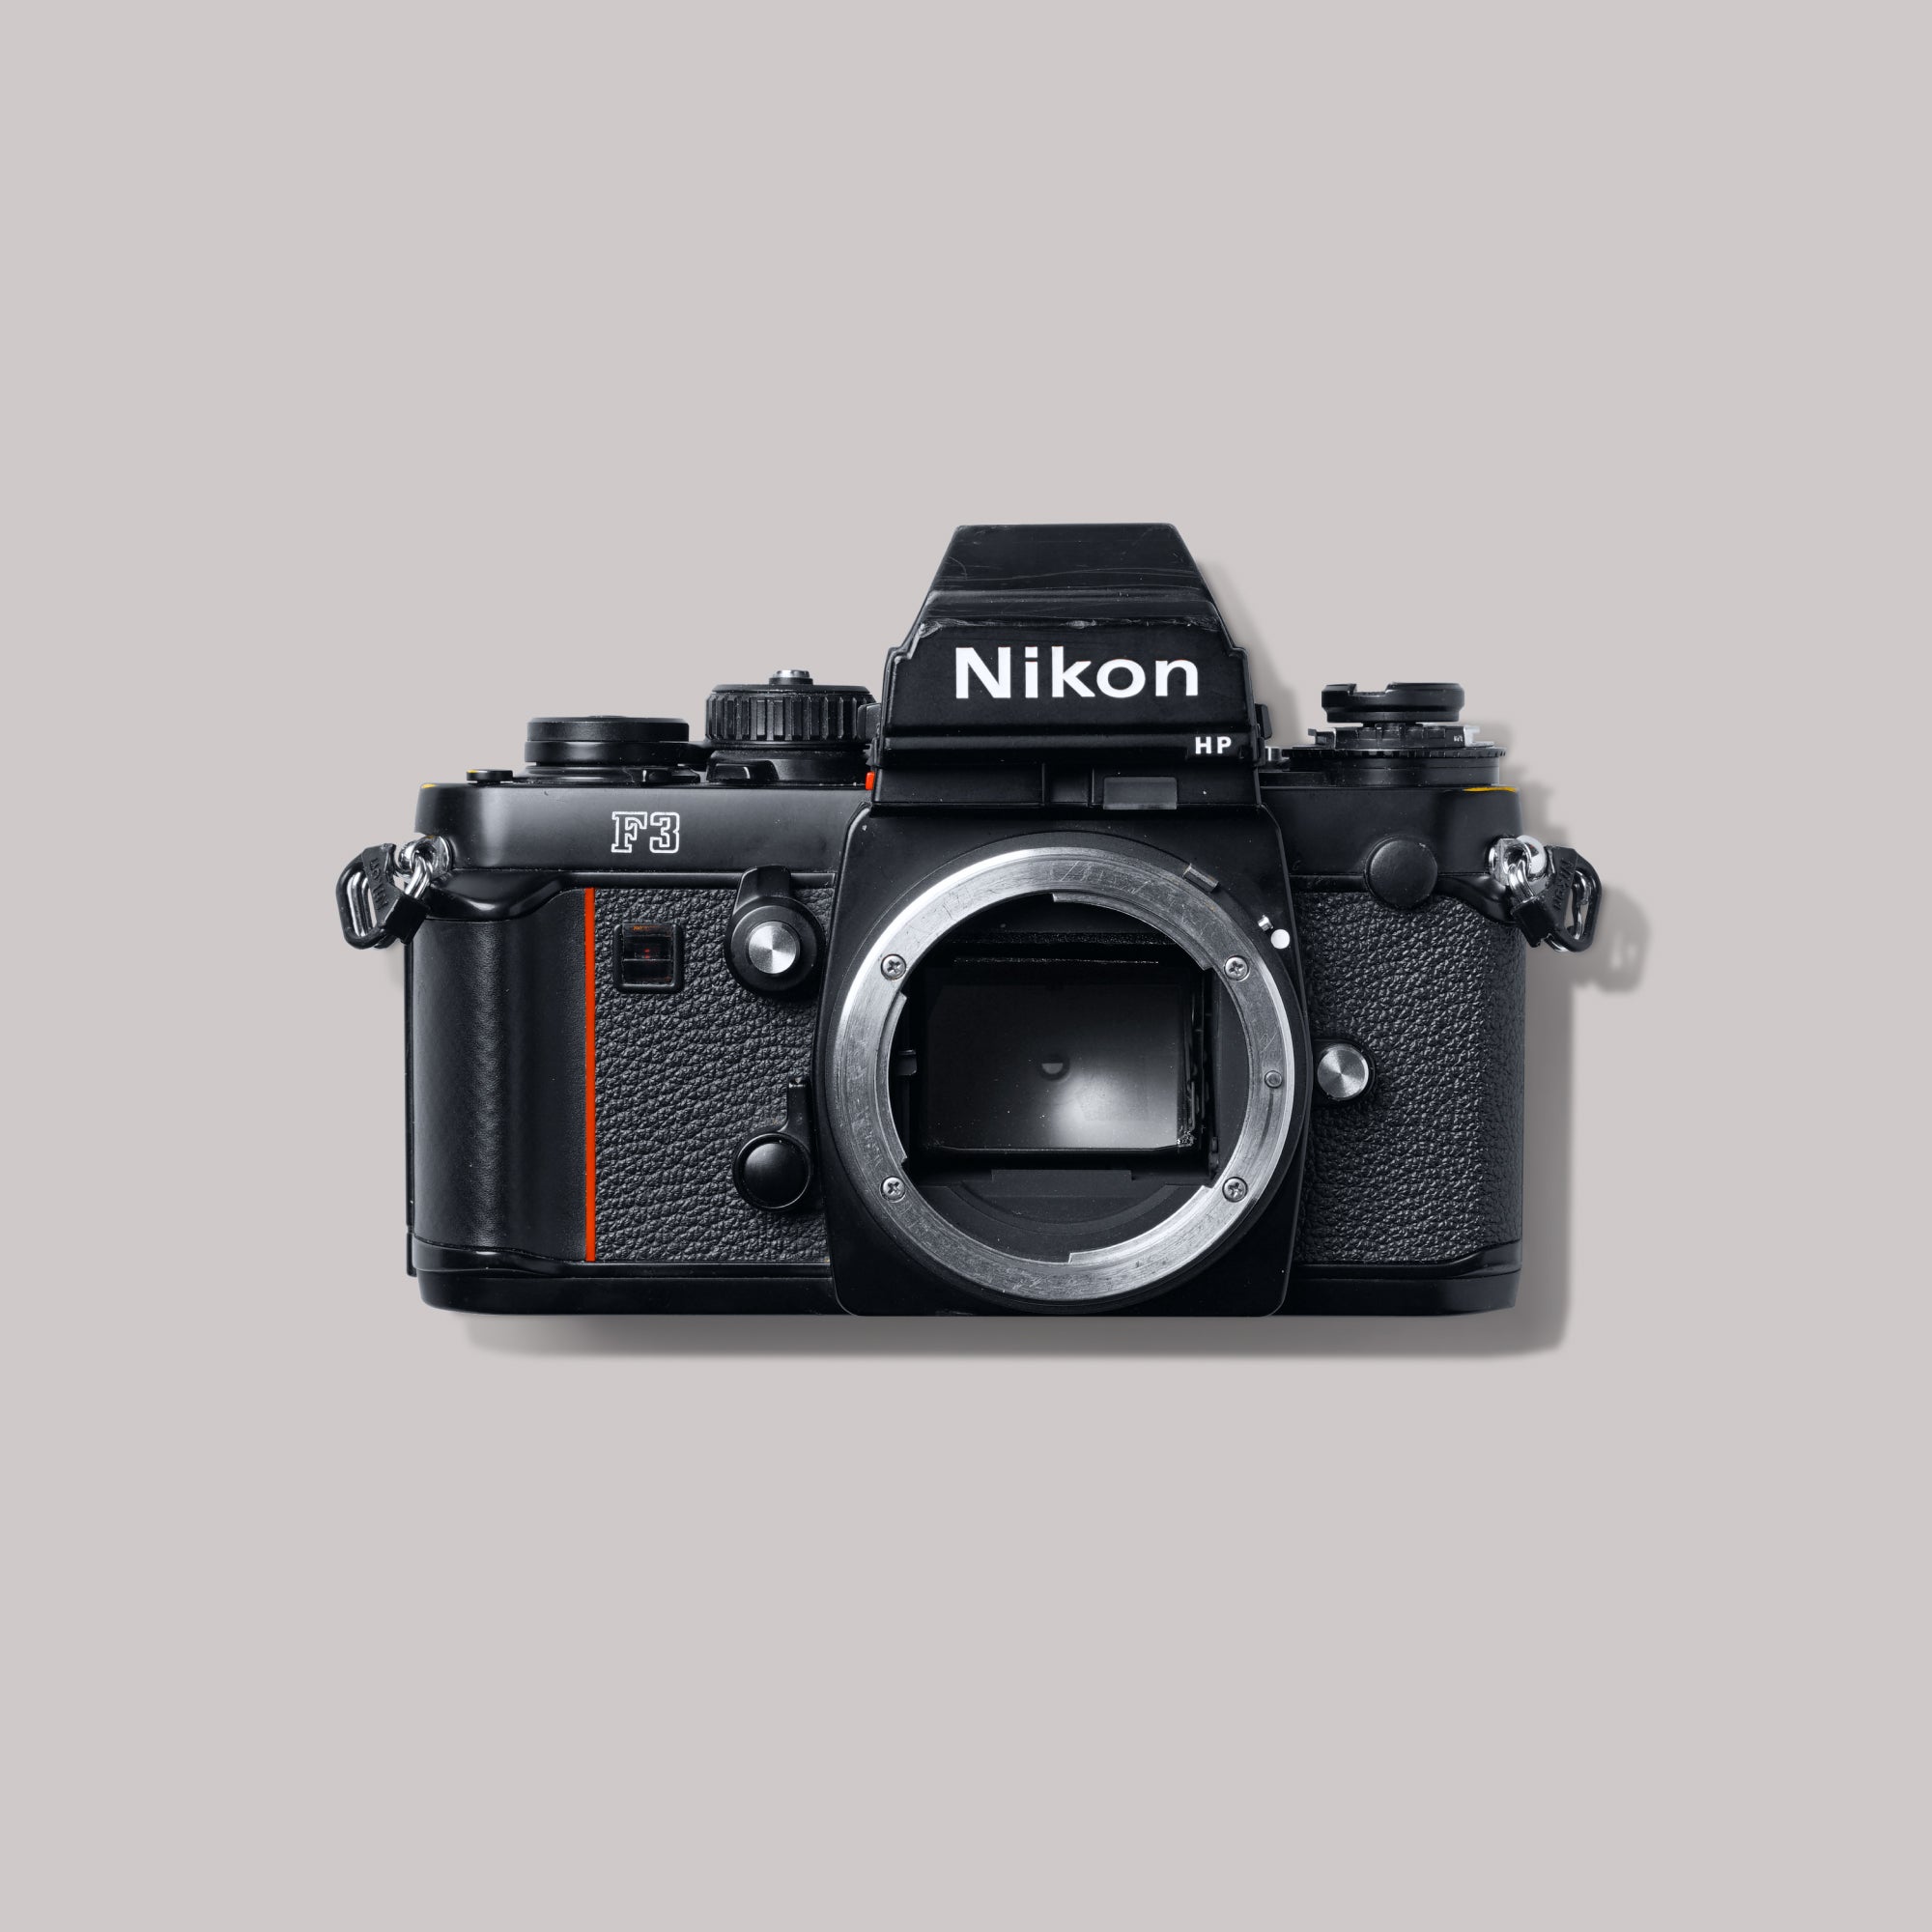 Buy Nikon F3 HP now at Analogue Amsterdam